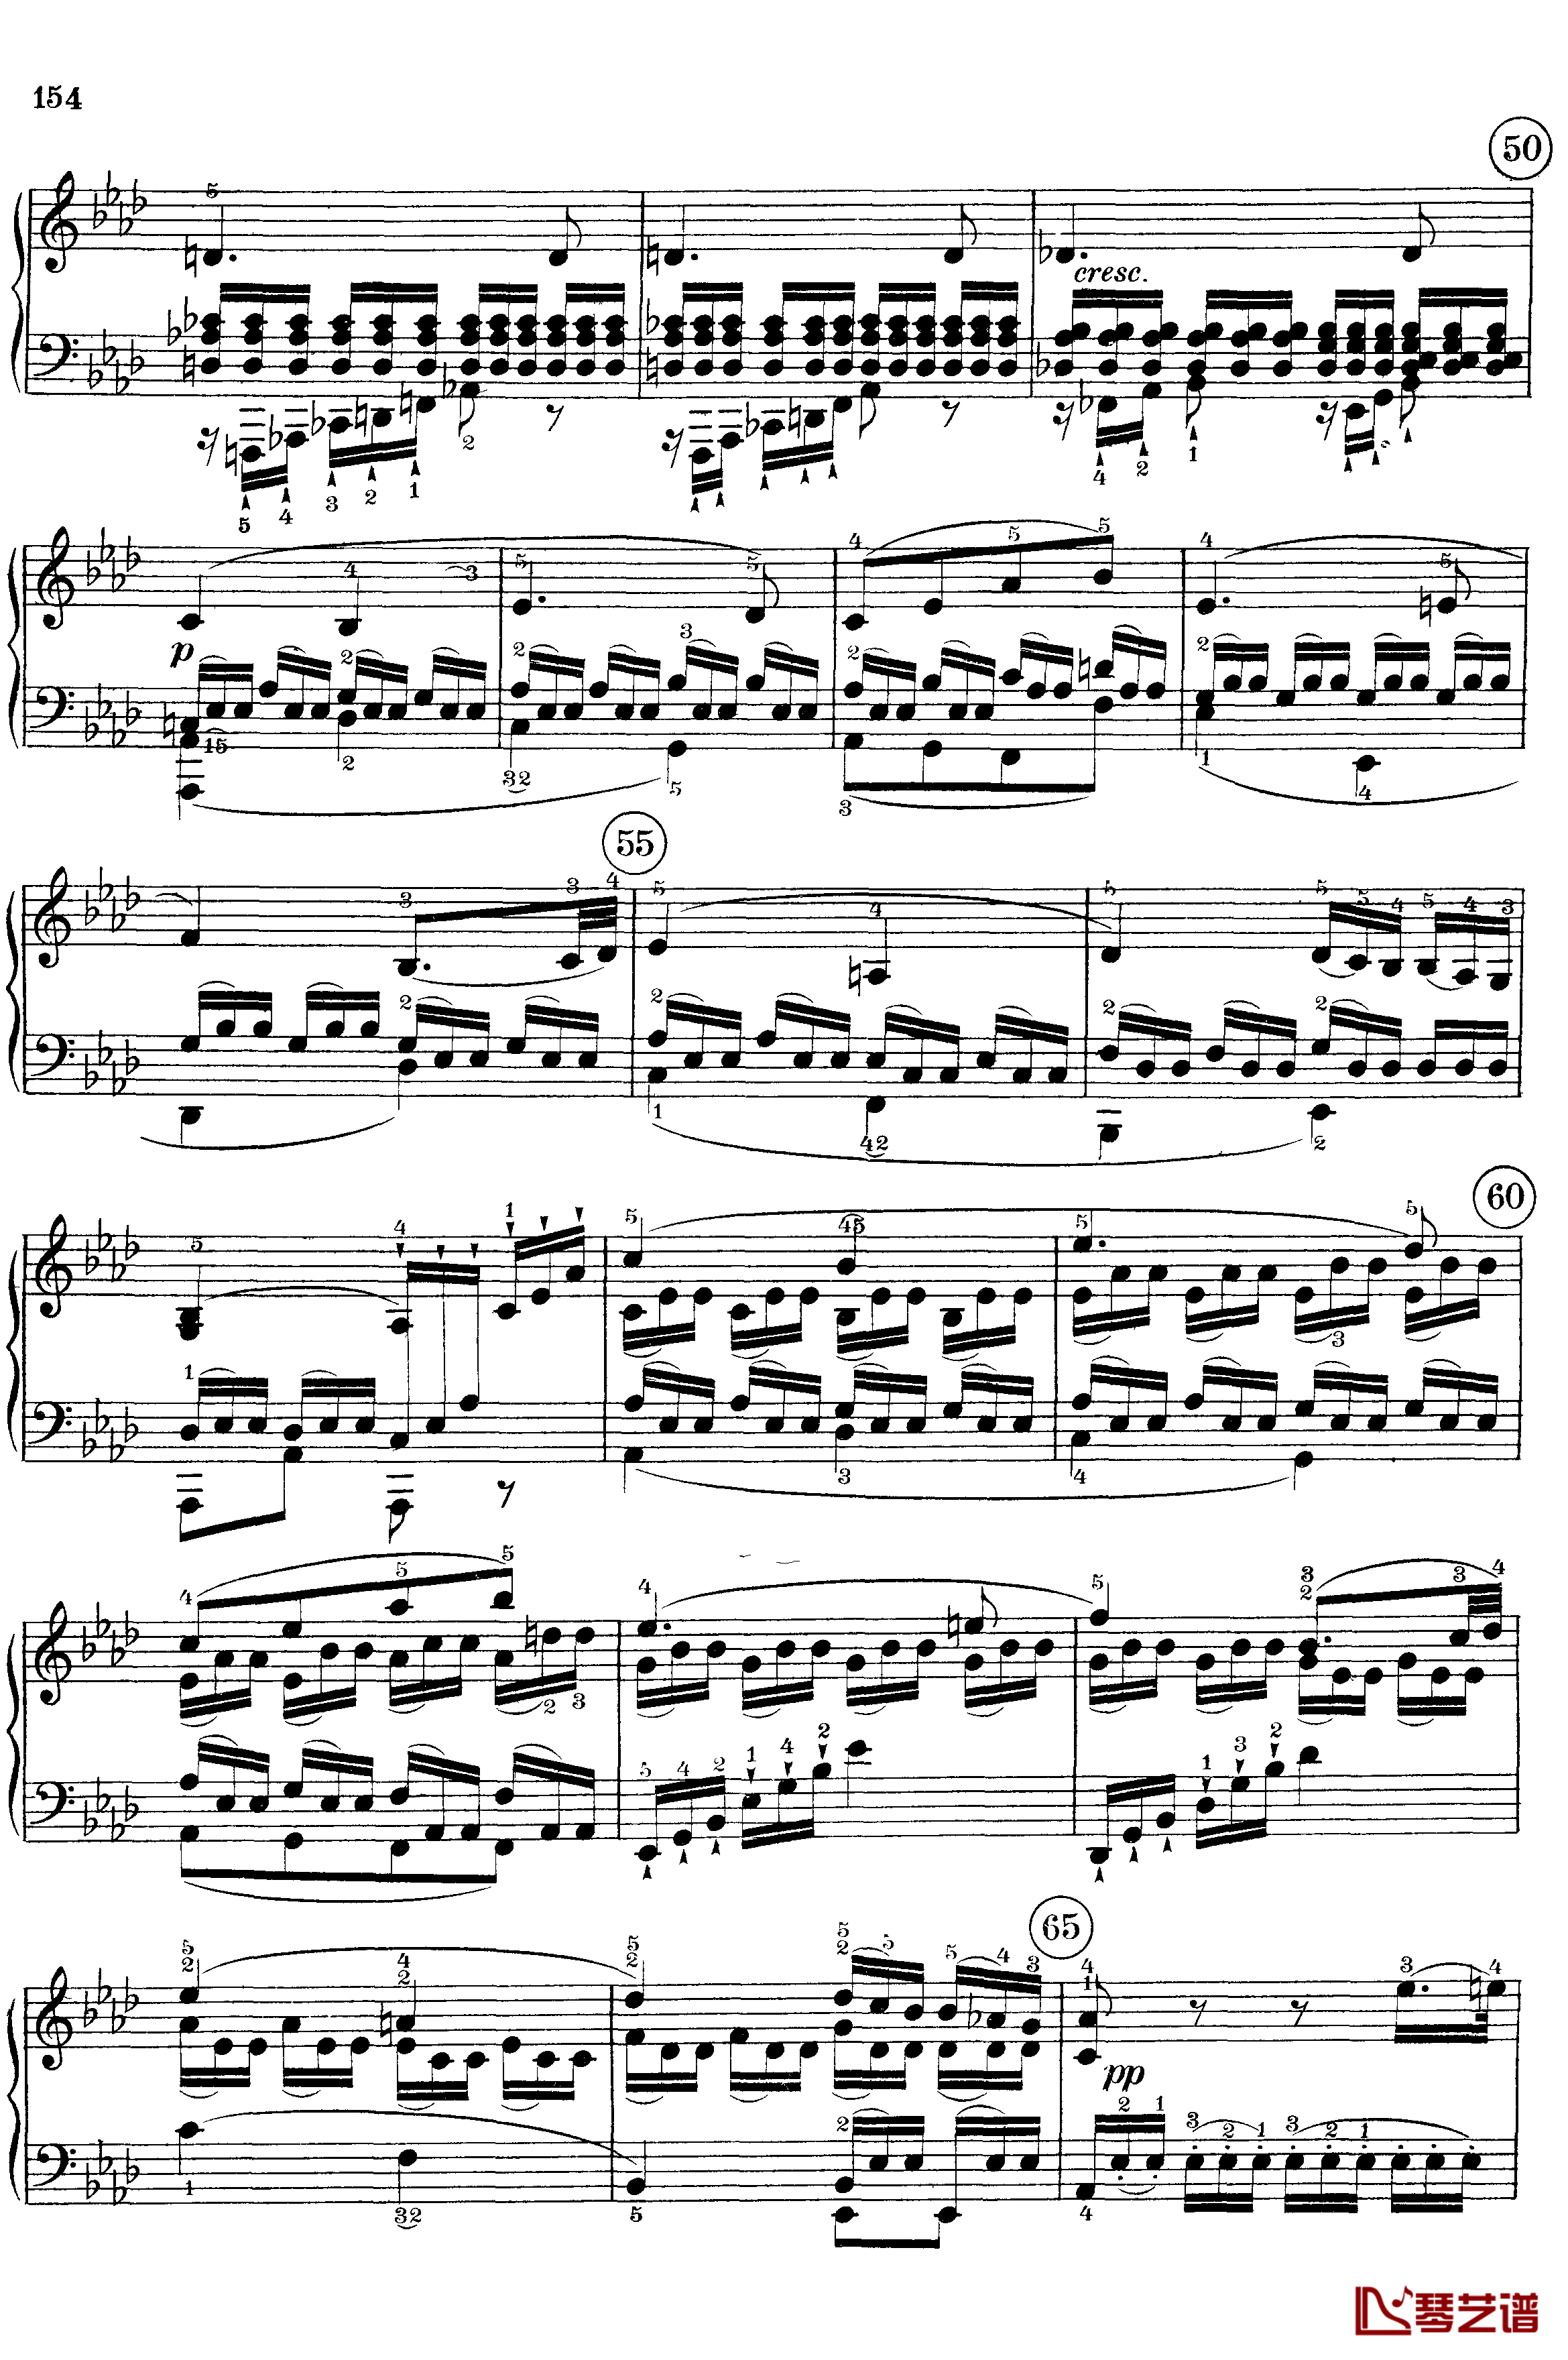 悲怆钢琴谱-c小调第八号钢琴奏鸣曲-全乐章-带指法版-贝多芬-beethoven12